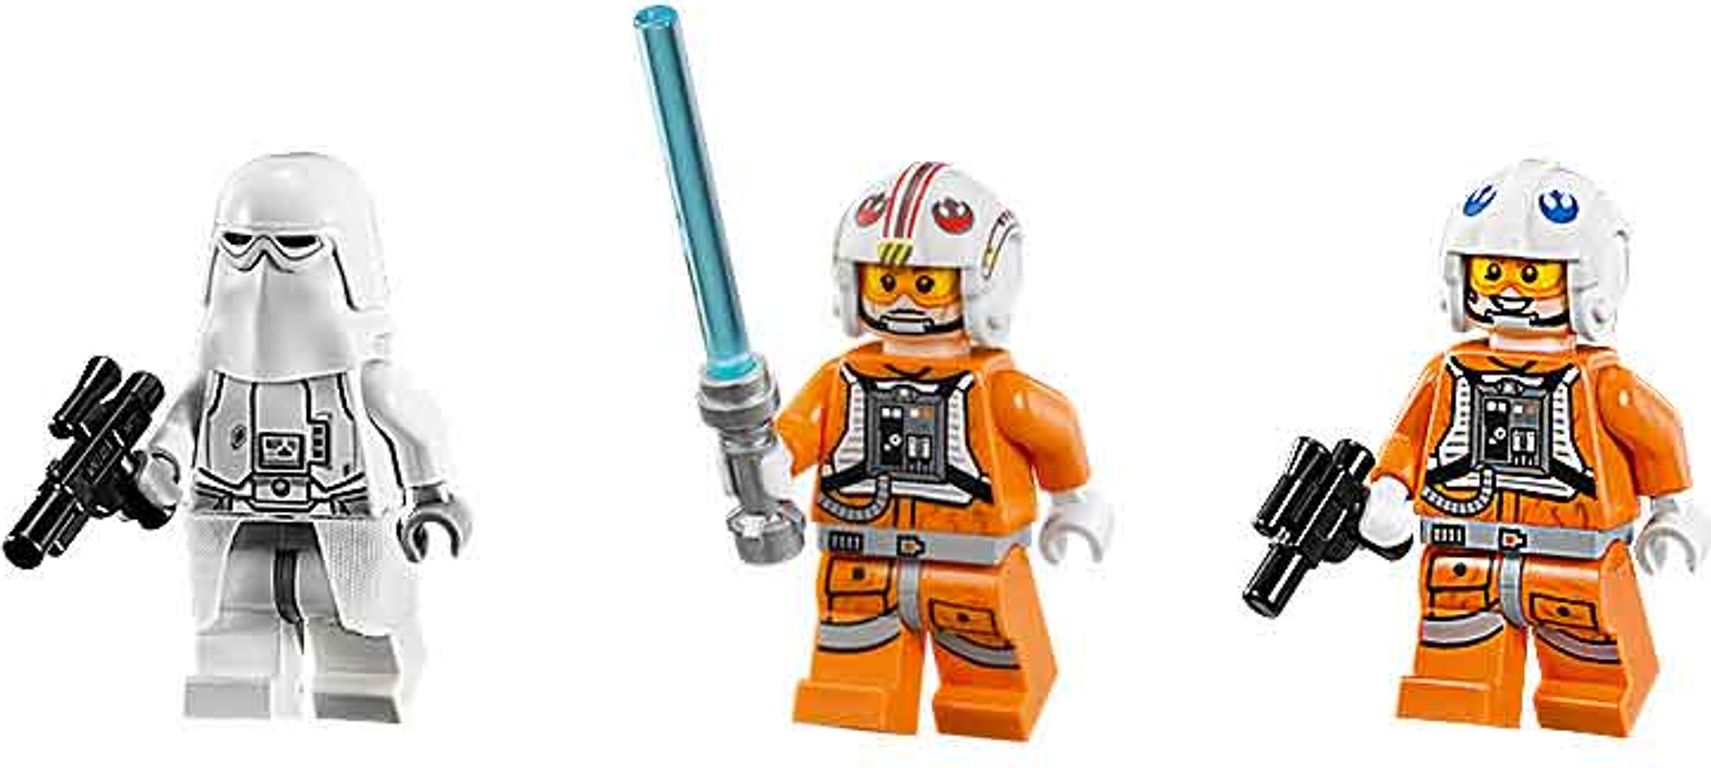 LEGO® Star Wars Snowspeeder minifigures